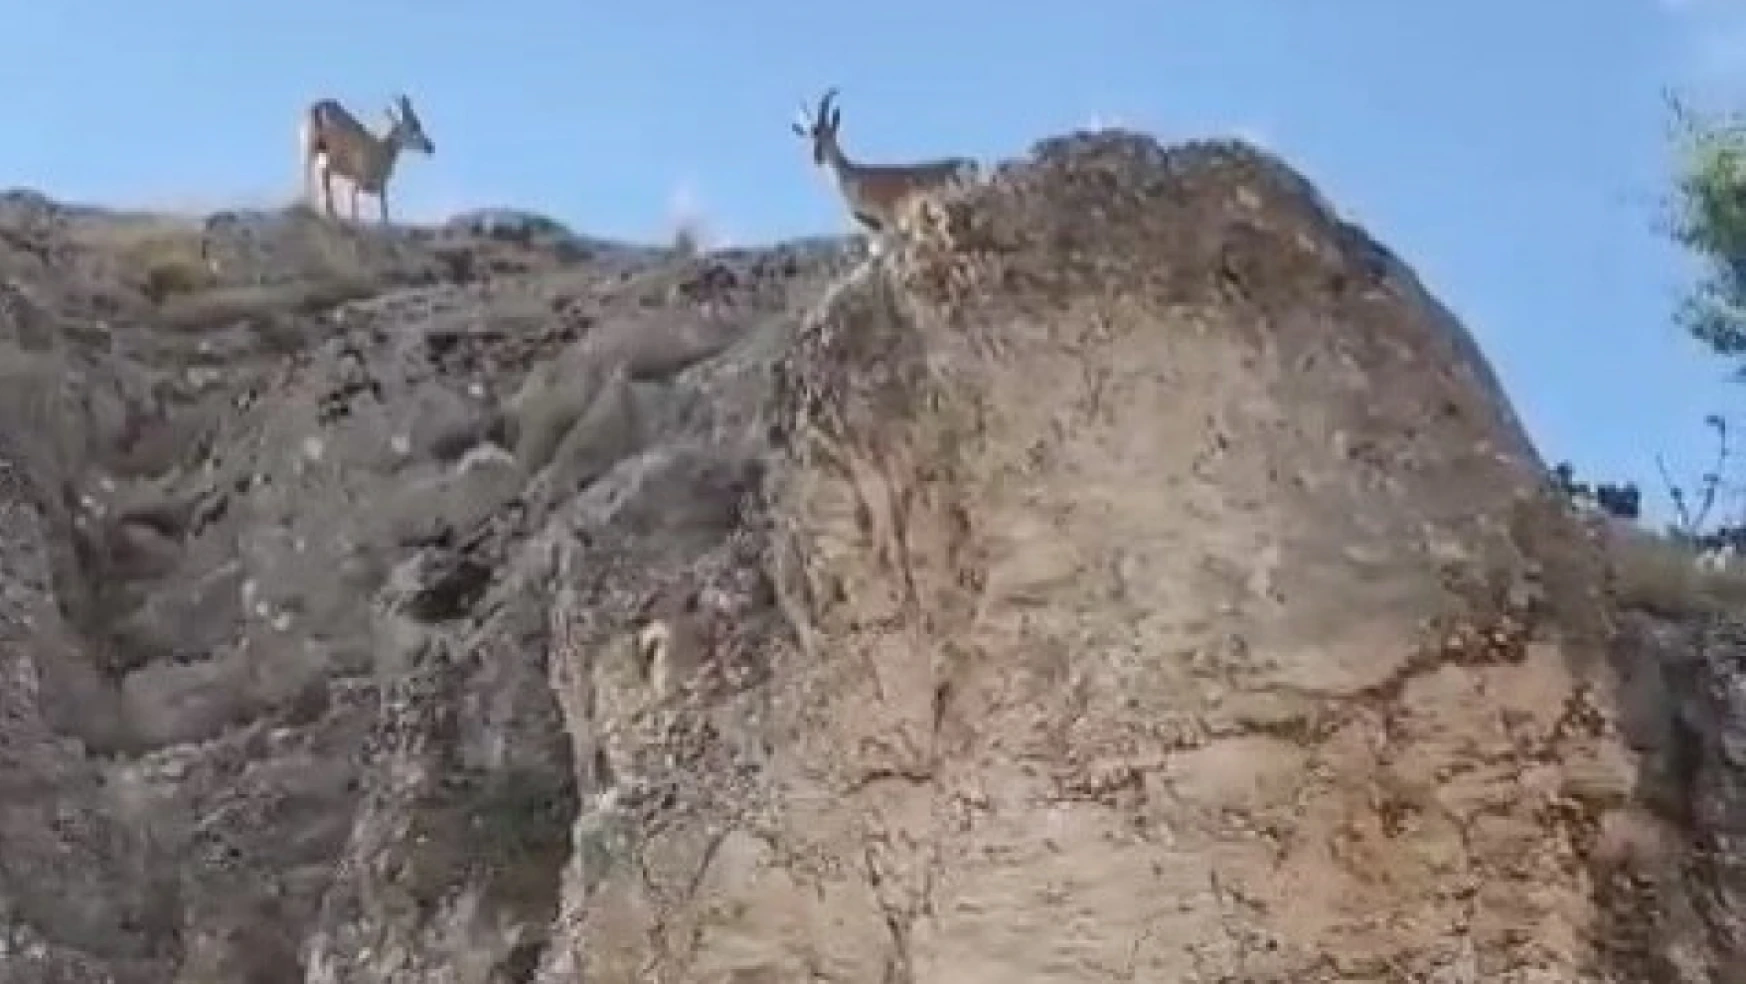 Koruma altındaki dağ keçileri Harput'ta görüntülendi